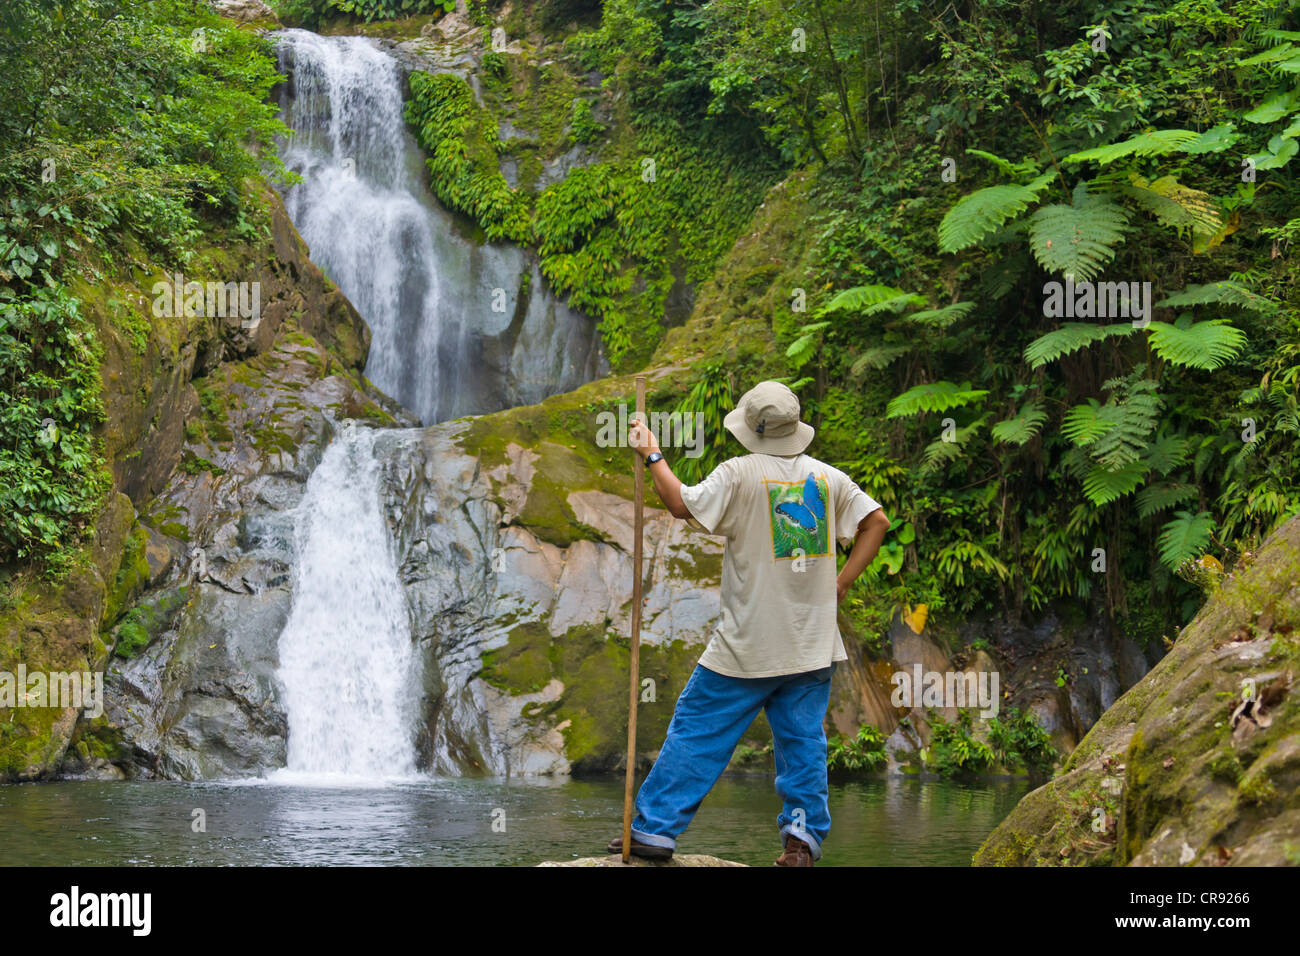 Par la cascade touristique dans la forêt tropicale, Parc National Pico Bonito, Honduras Banque D'Images